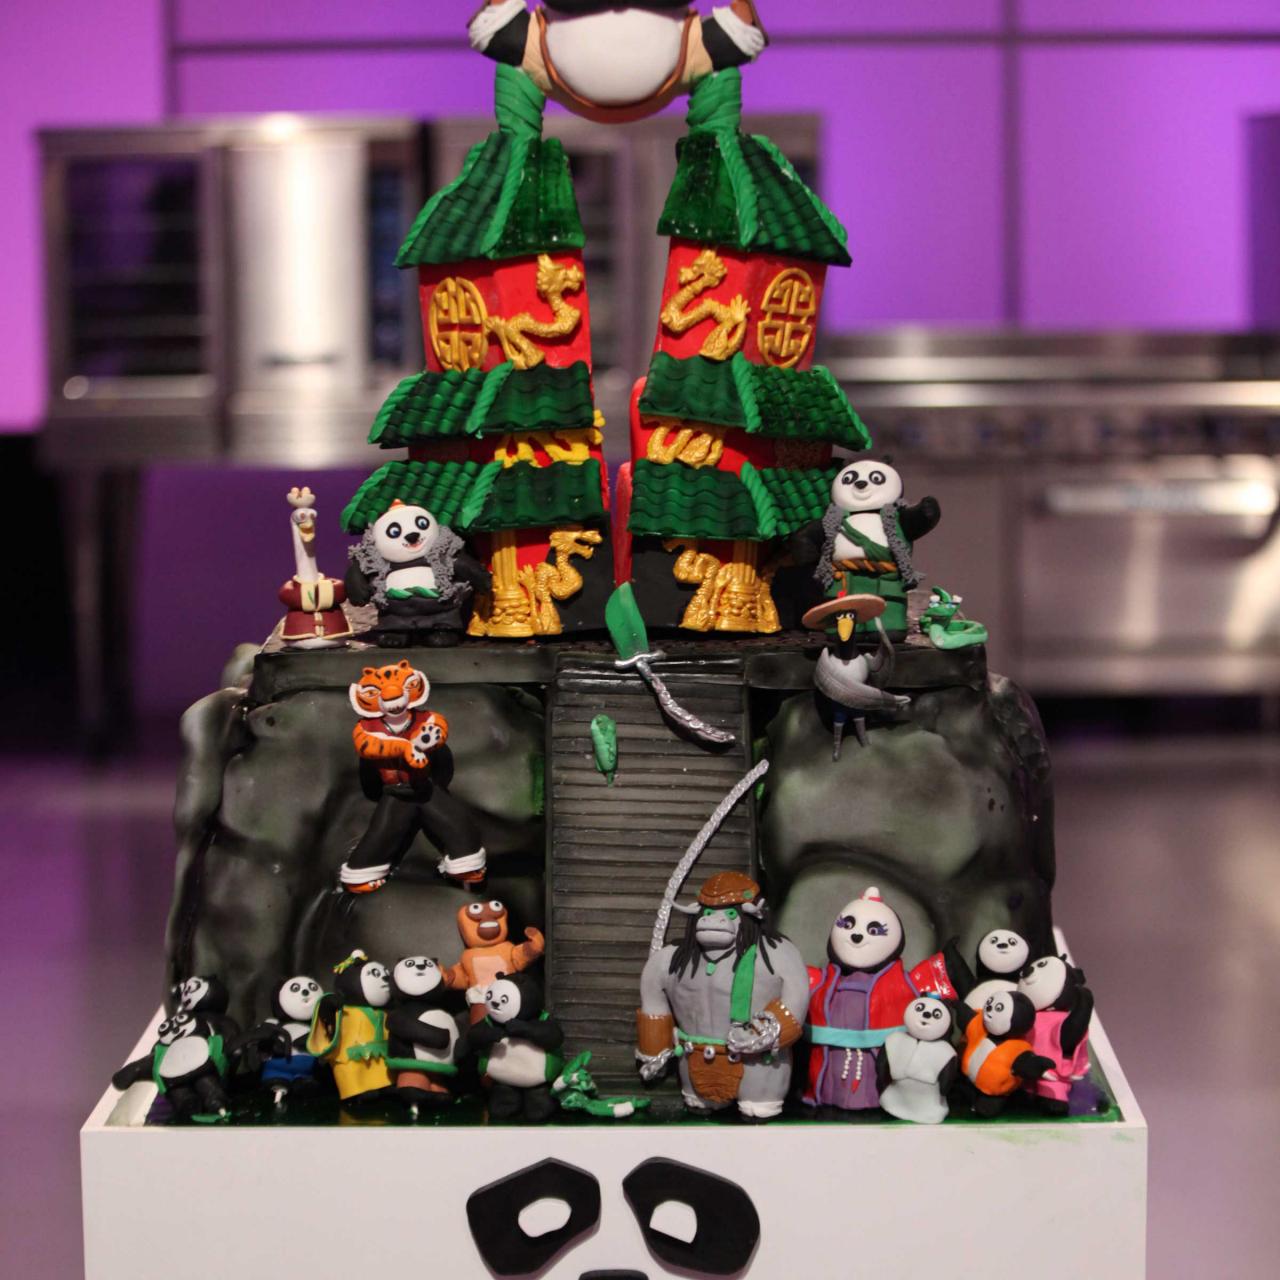 Kung Fu Panda - Decorated Cake by Viorica Dinu - CakesDecor